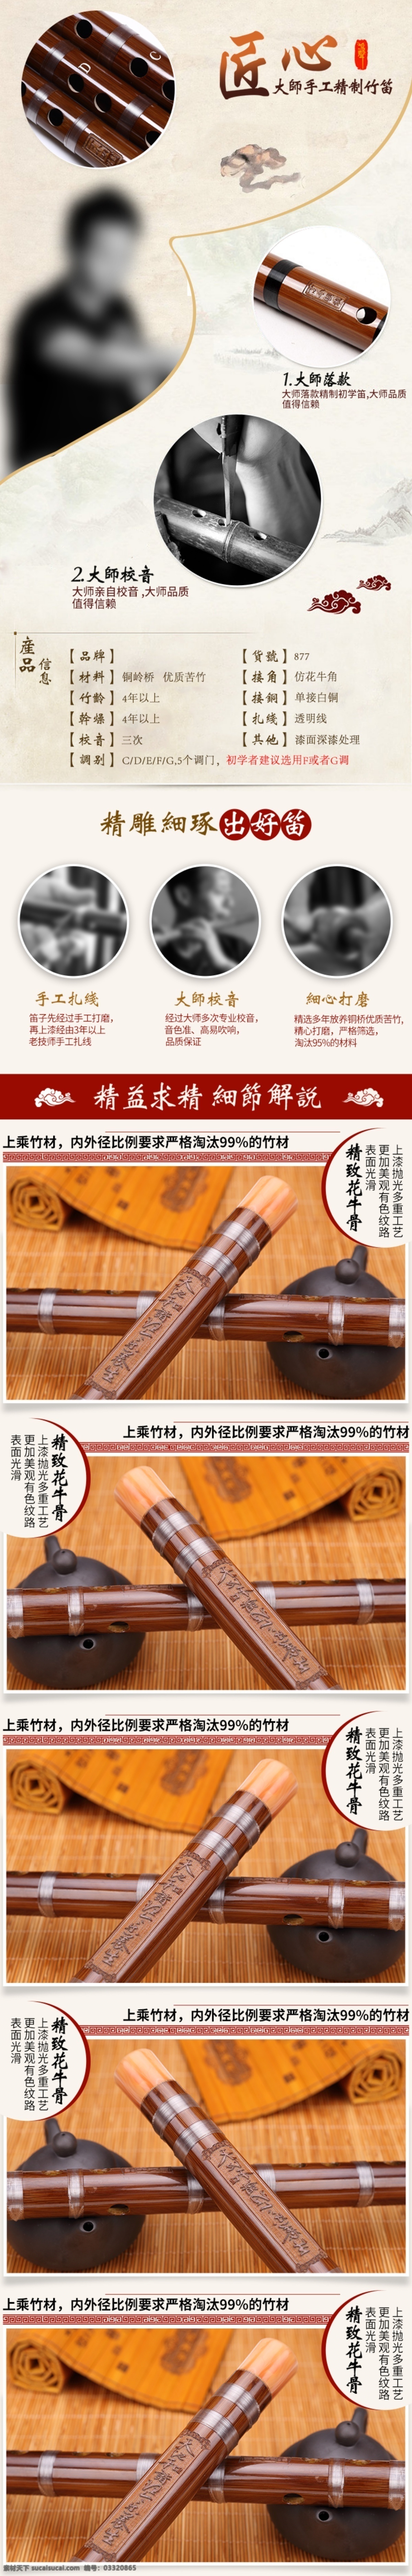 民族乐器 笛子 详情 页 模板 复古 中国 风 乐器